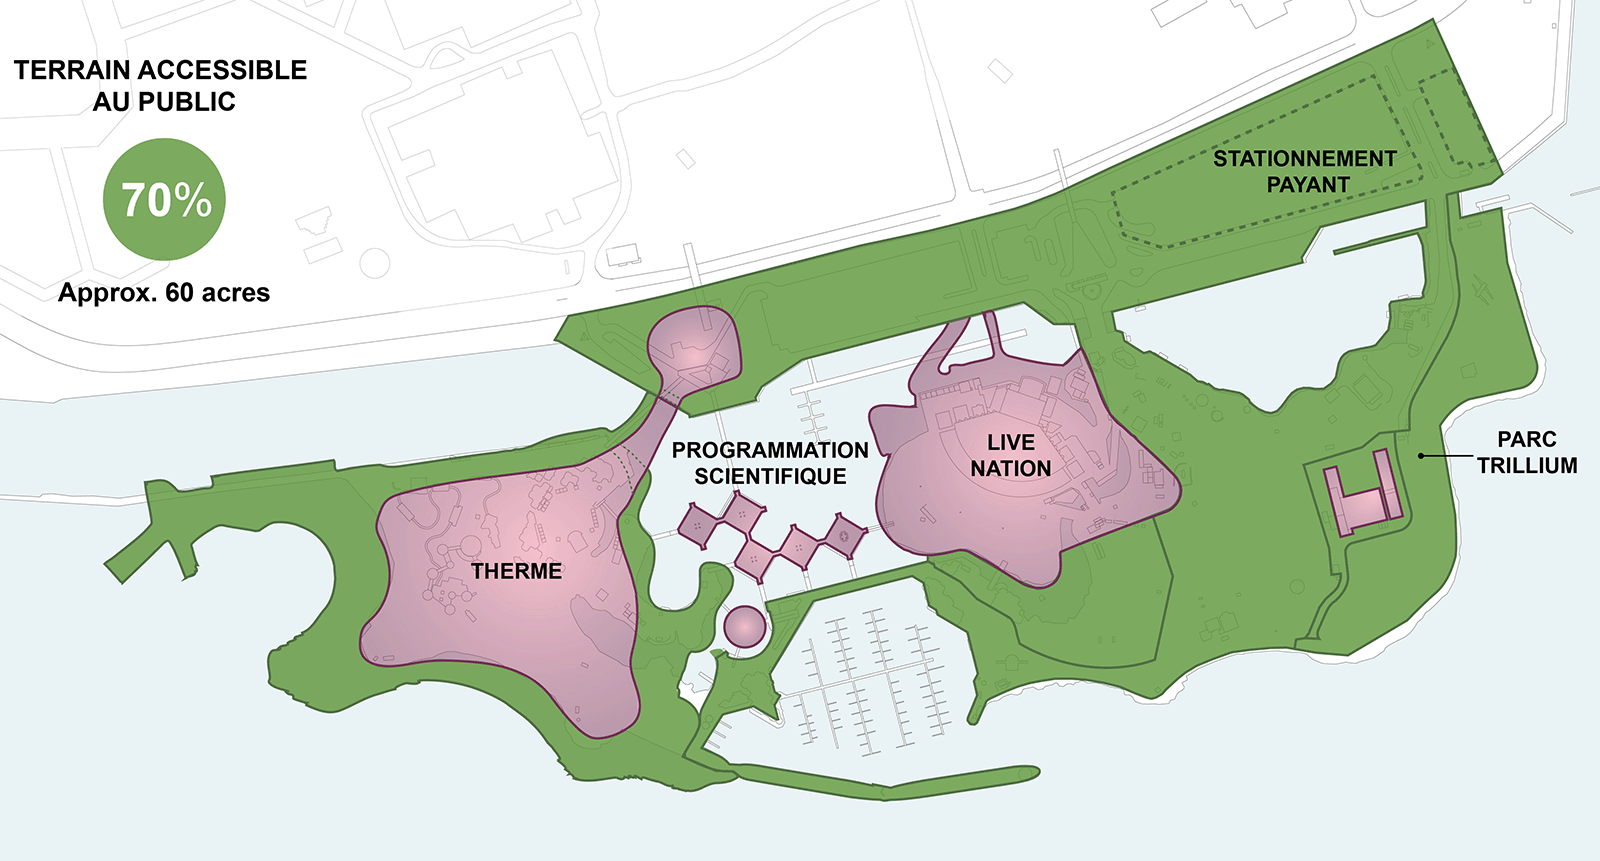 Carte du site de la Place de l’Ontario, indiquant que 70 % des terres, soit 60 acres, sont accessibles au public autour du rivage de l’île ouest et de l’empreinte du bâtiment de Therme, de toute l’île est, à l’exception d’un petit emplacement près du parc Trillium, de toute la marina et de toute la partie continentale, à l’exception de l’entrée du bâtiment de Therme, le rivage autour de l’entrée étant toujours accessible au public. Les empreintes des secteurs de Therme et de Live Nation, les pavillons et la Cinésphère, ainsi qu’une petite zone près du parc Trillium sont indiqués comme des terrains à accès payant, ce qui correspond à 30 % de la superficie, soit 25 acres. 